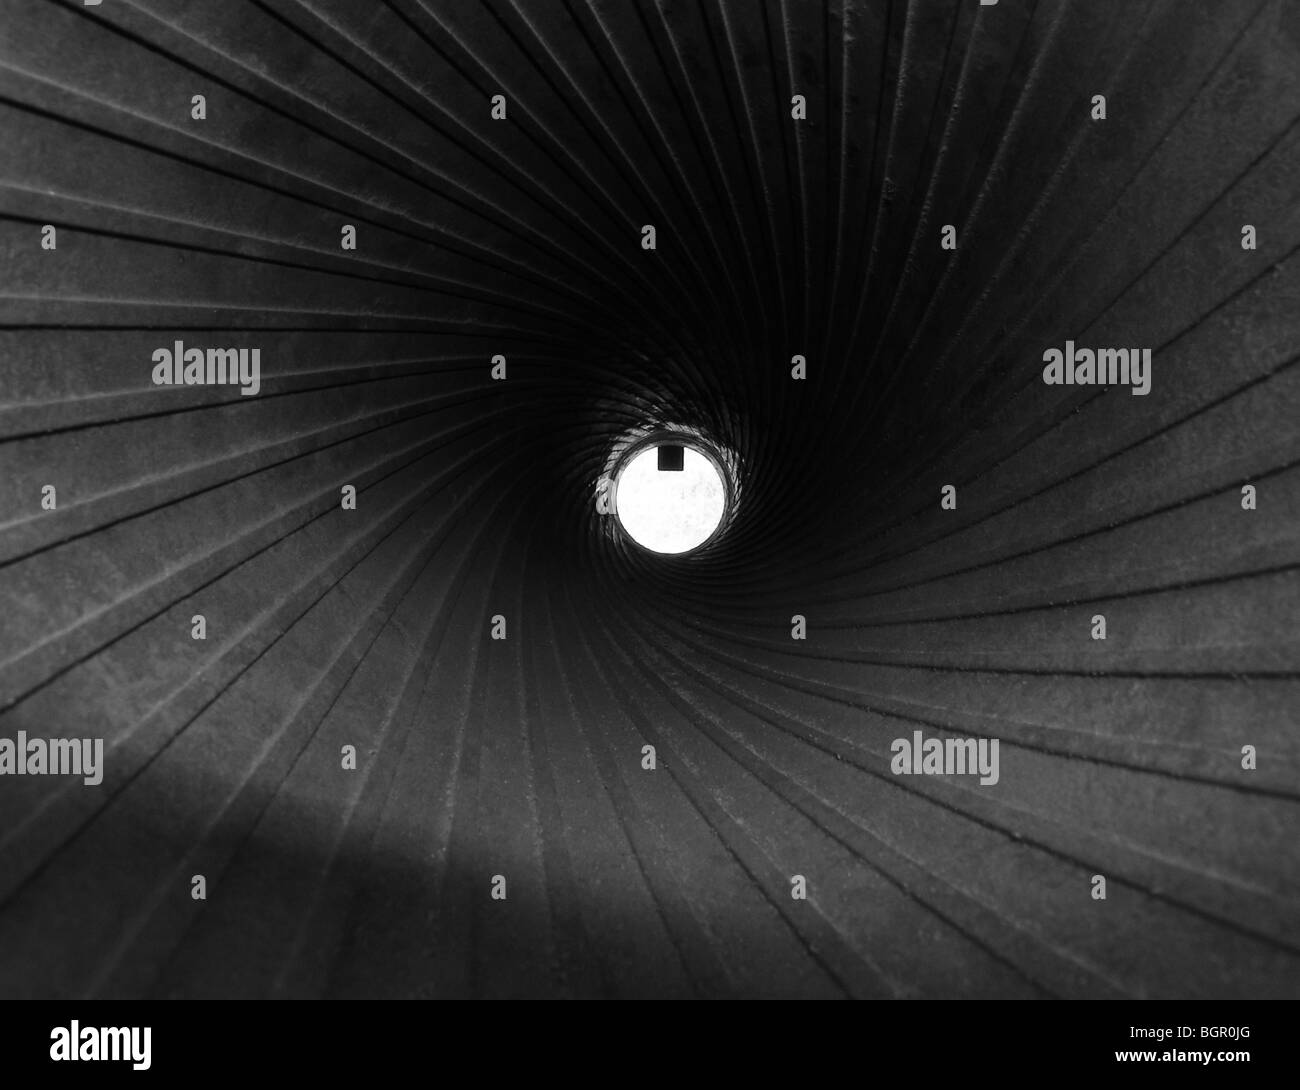 Disco bianco lucido con spirali in acciaio di rigatura, vista del cannone canna all'interno, immagine monocromatica Foto Stock